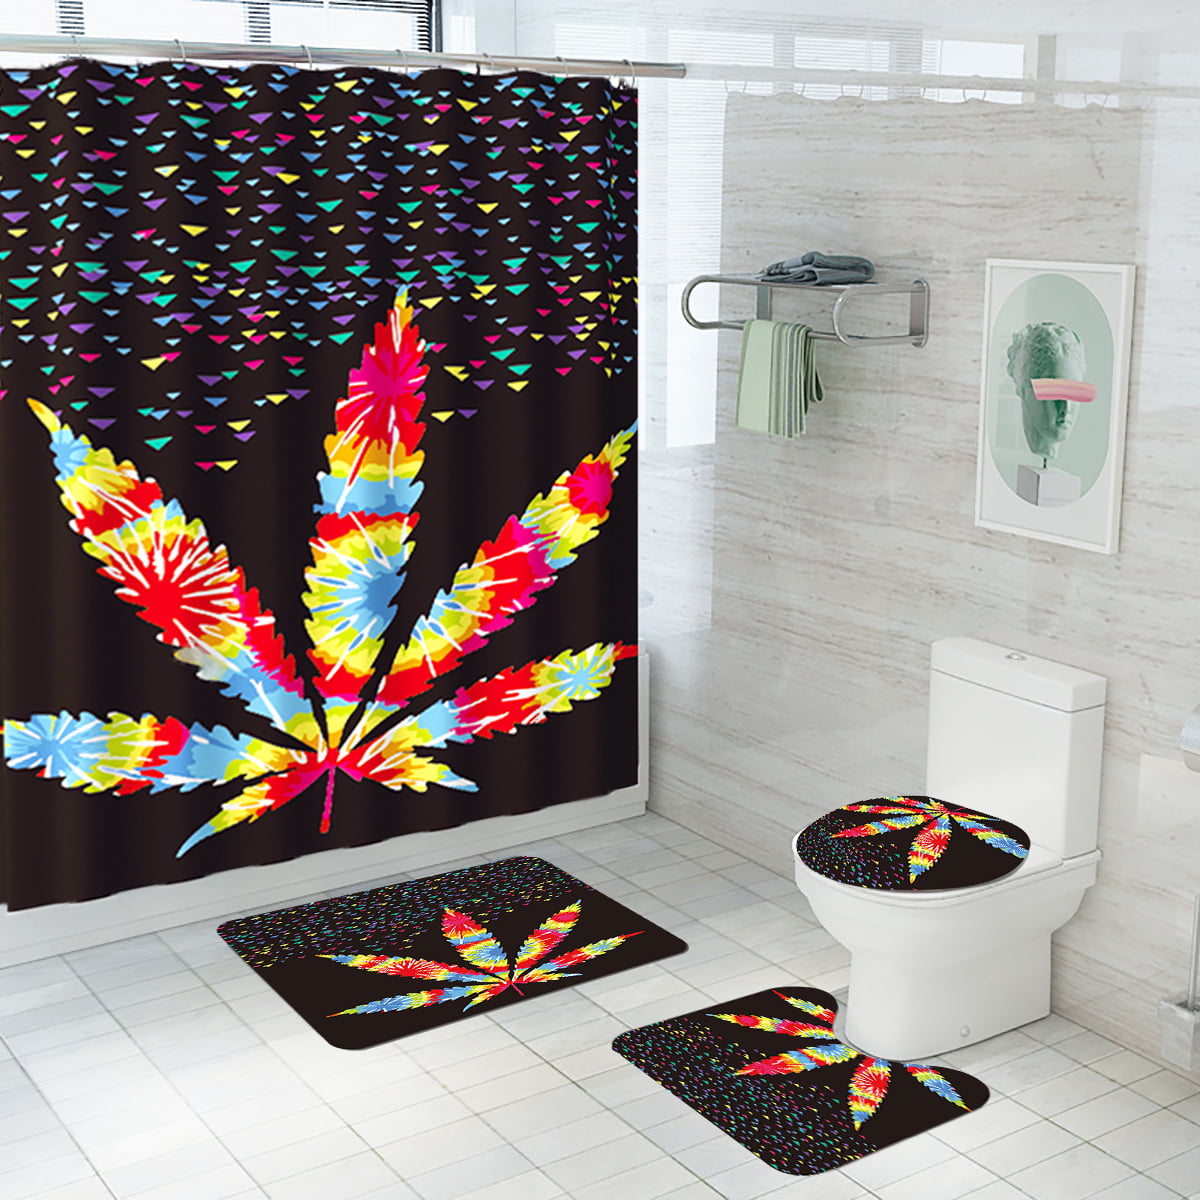 Details about   3D Feather Bathroom Toilet 3PCS Floor Mat Bathroom Carpet Waterproof Non-slip 